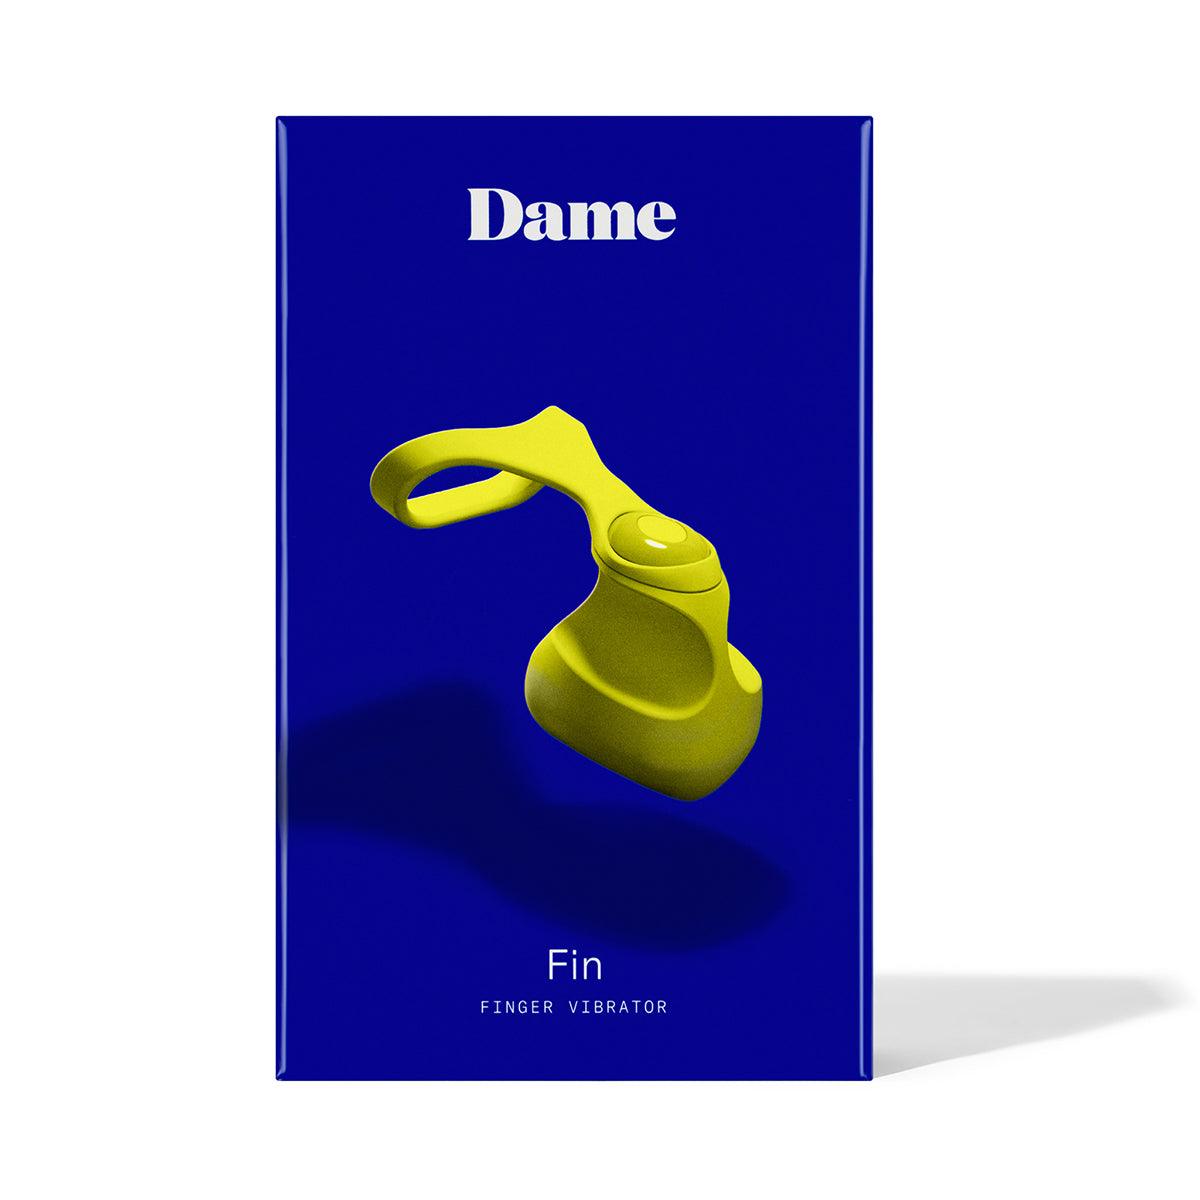 Fin by Dame - Citrus - shop enby